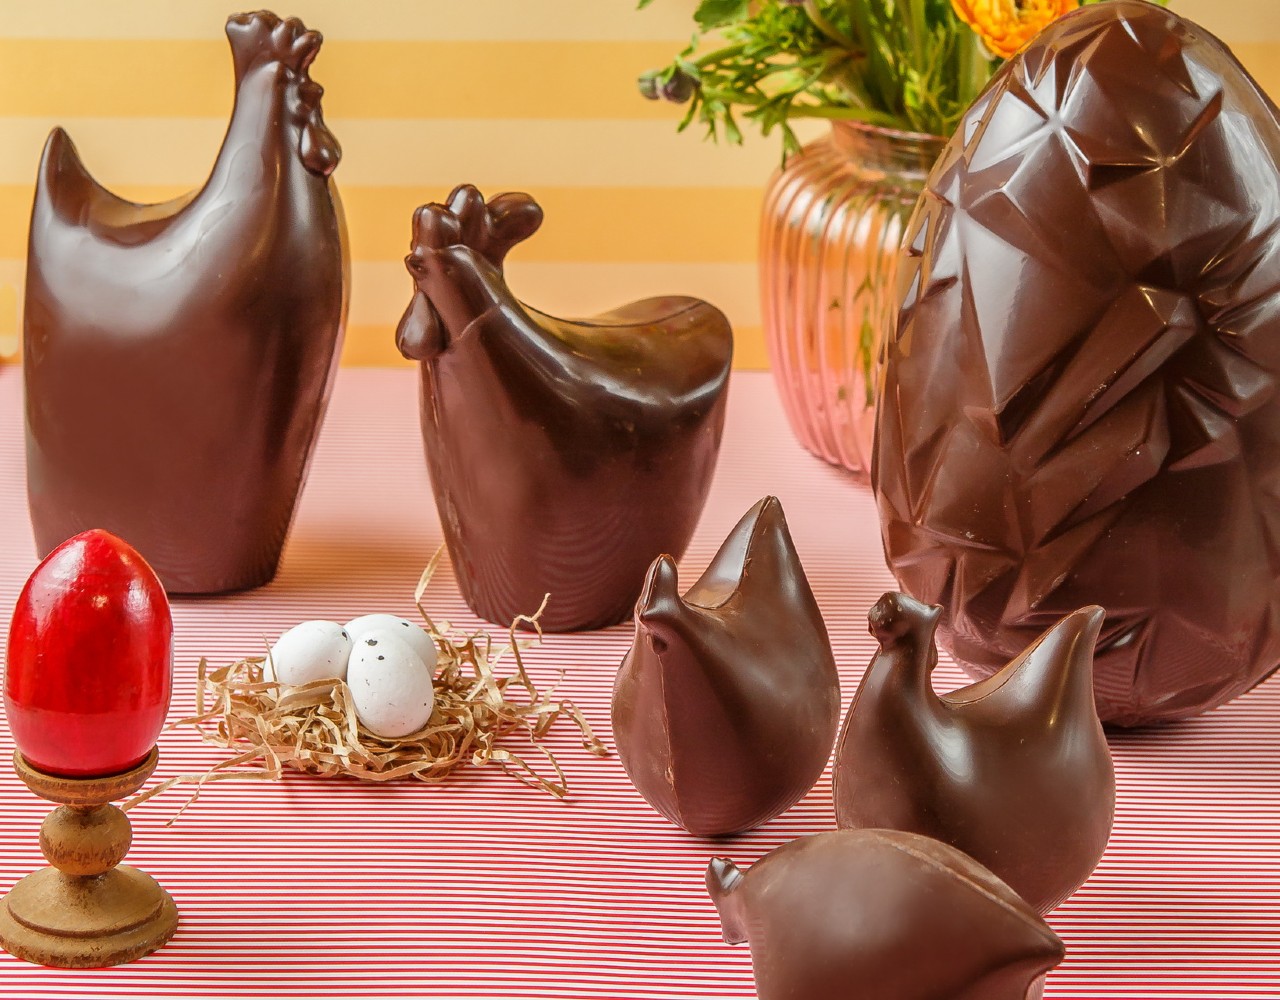 Οι πασχαλινές σοκολατένιες δημιουργίες των Cakers είναι η φετινή γλυκιά εμμονή μας